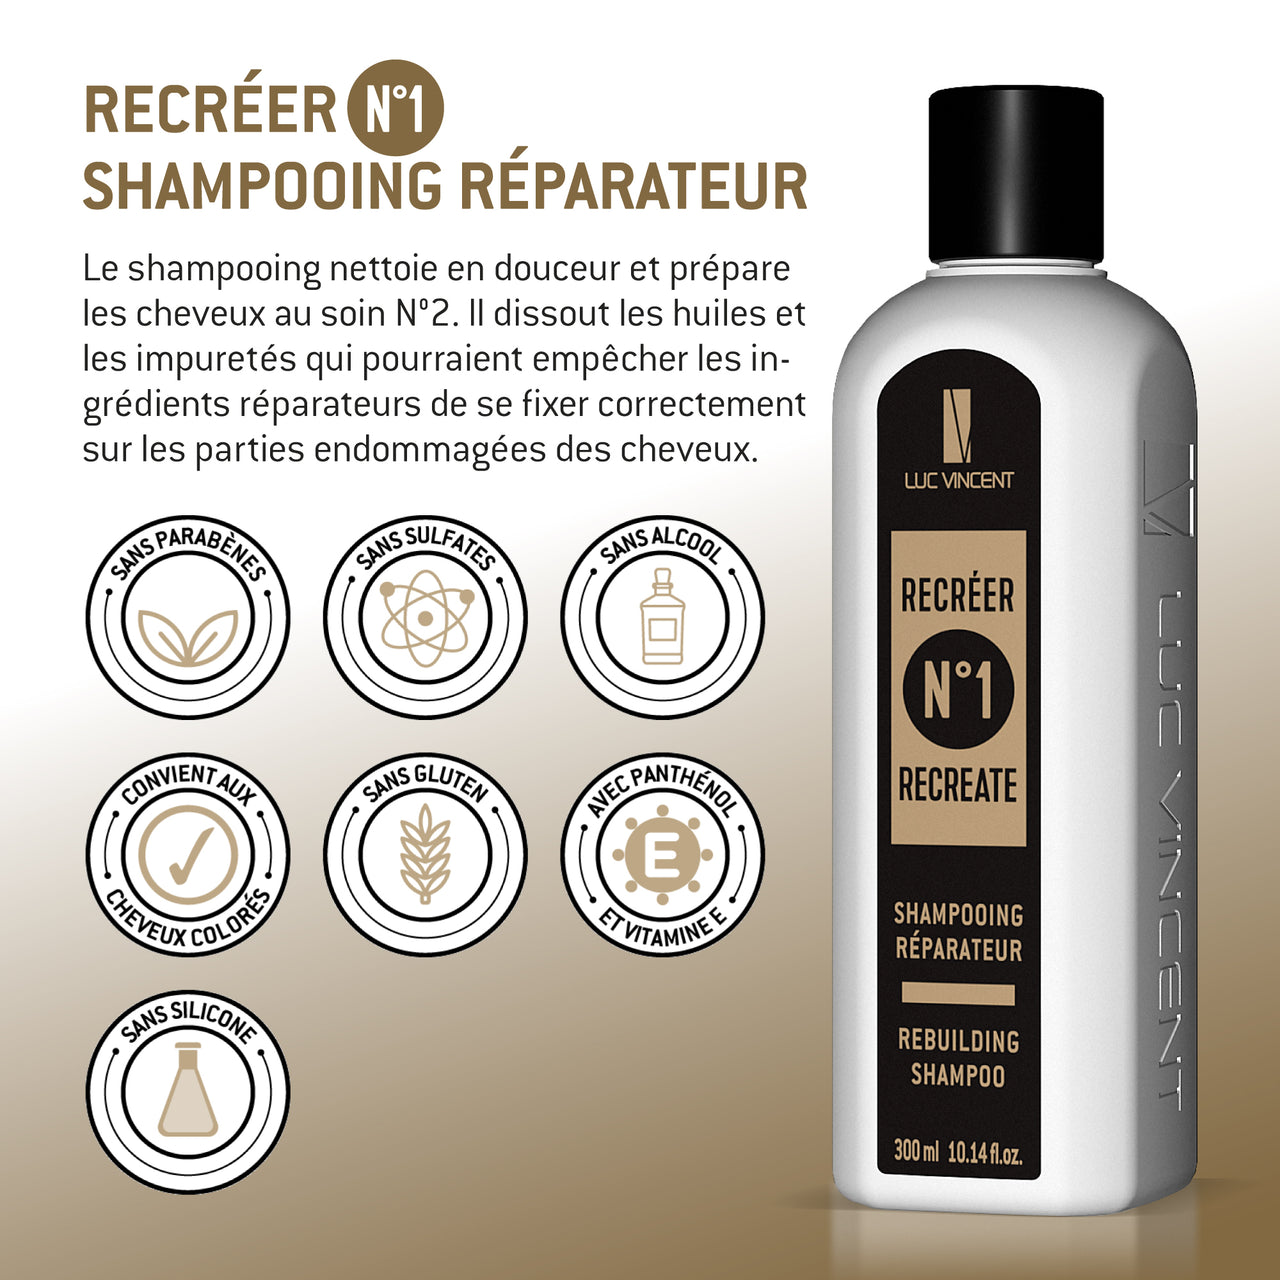 Système Recréer - Nº1 Shampoing Réparateur - Luc Vincent